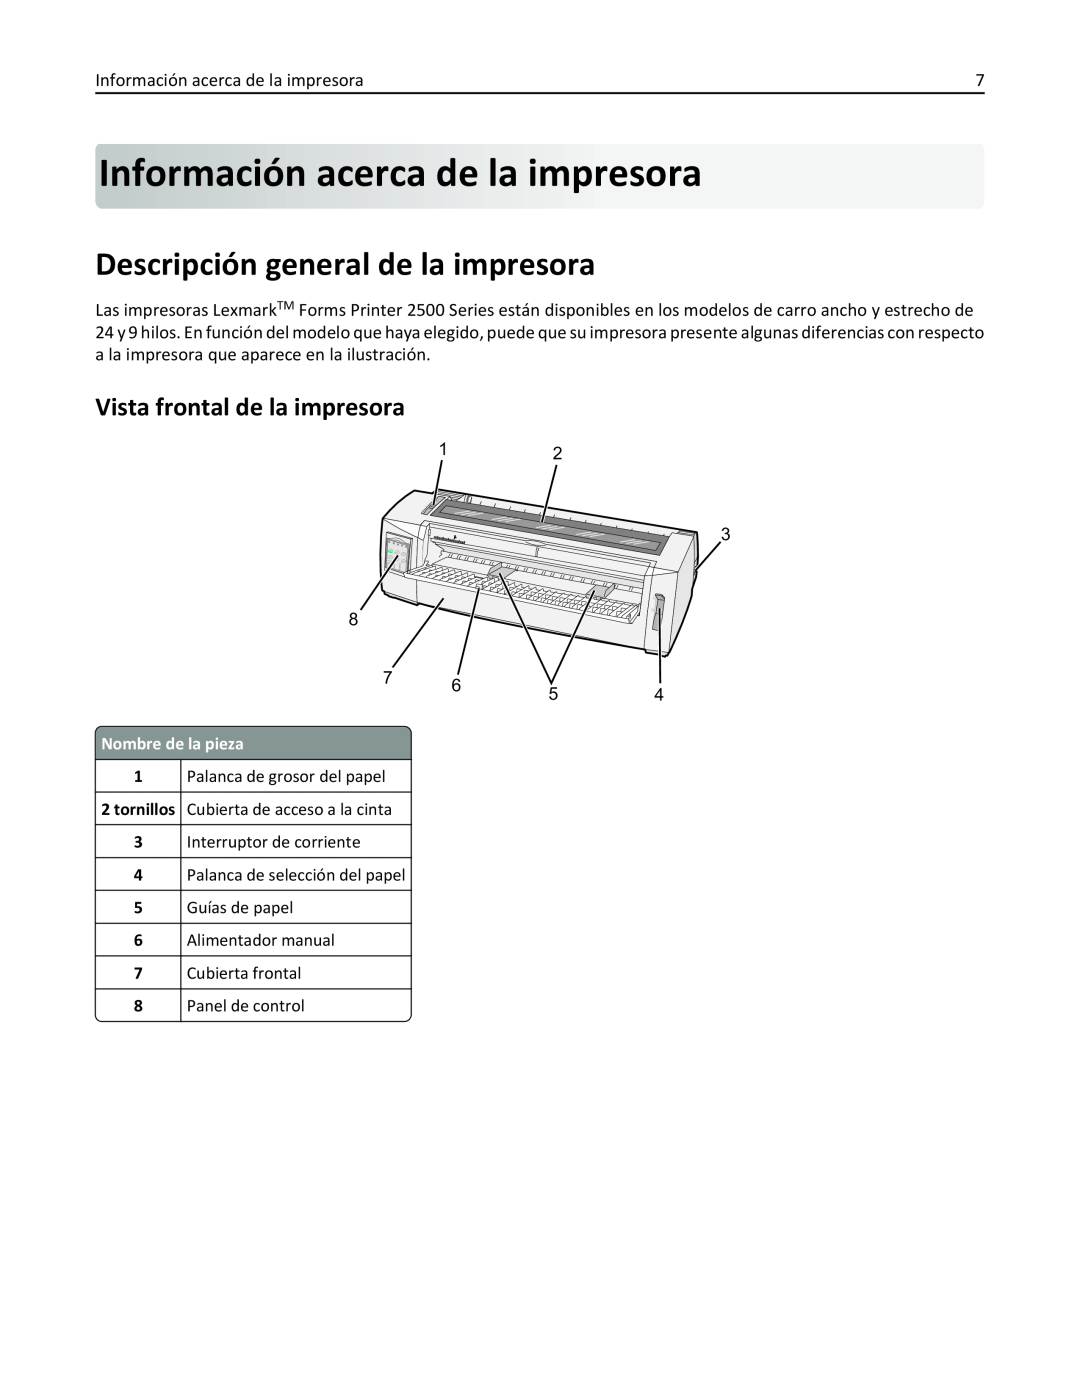 Lexmark 2500 manual Información acerca dela impresora, Descripción general de la impresora, Vista frontal de la impresora 